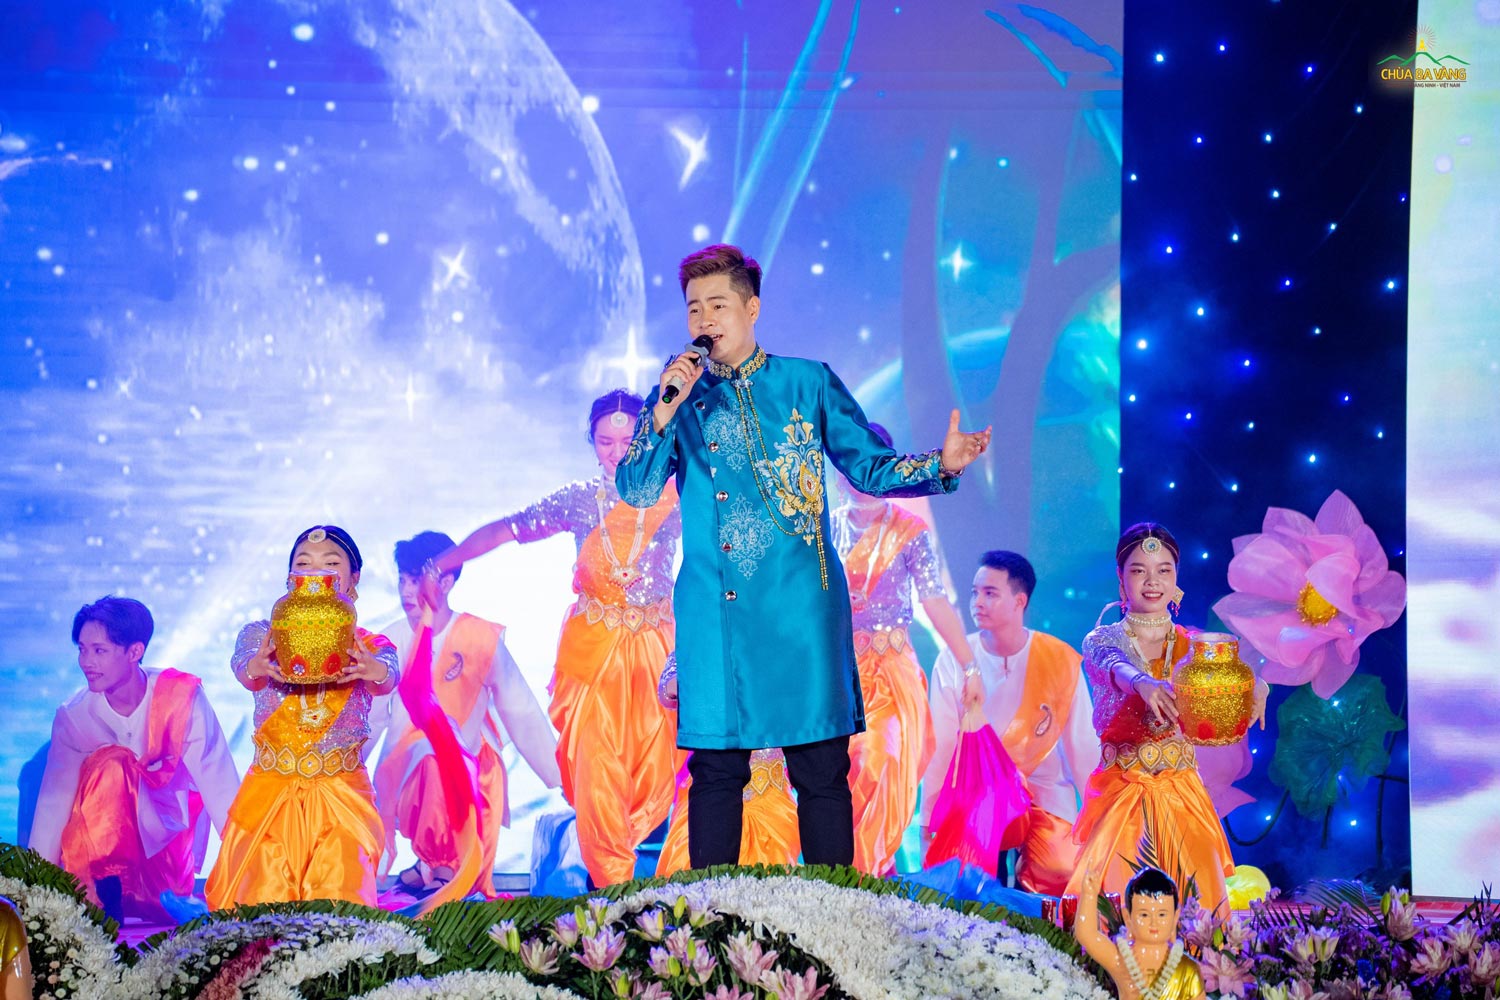 Ca sĩ, diễn viên trong những trang phục Ấn Độ bắt mắt biểu diễn bài hát song ngữ “Khúc ca mừng tắm Phật” 